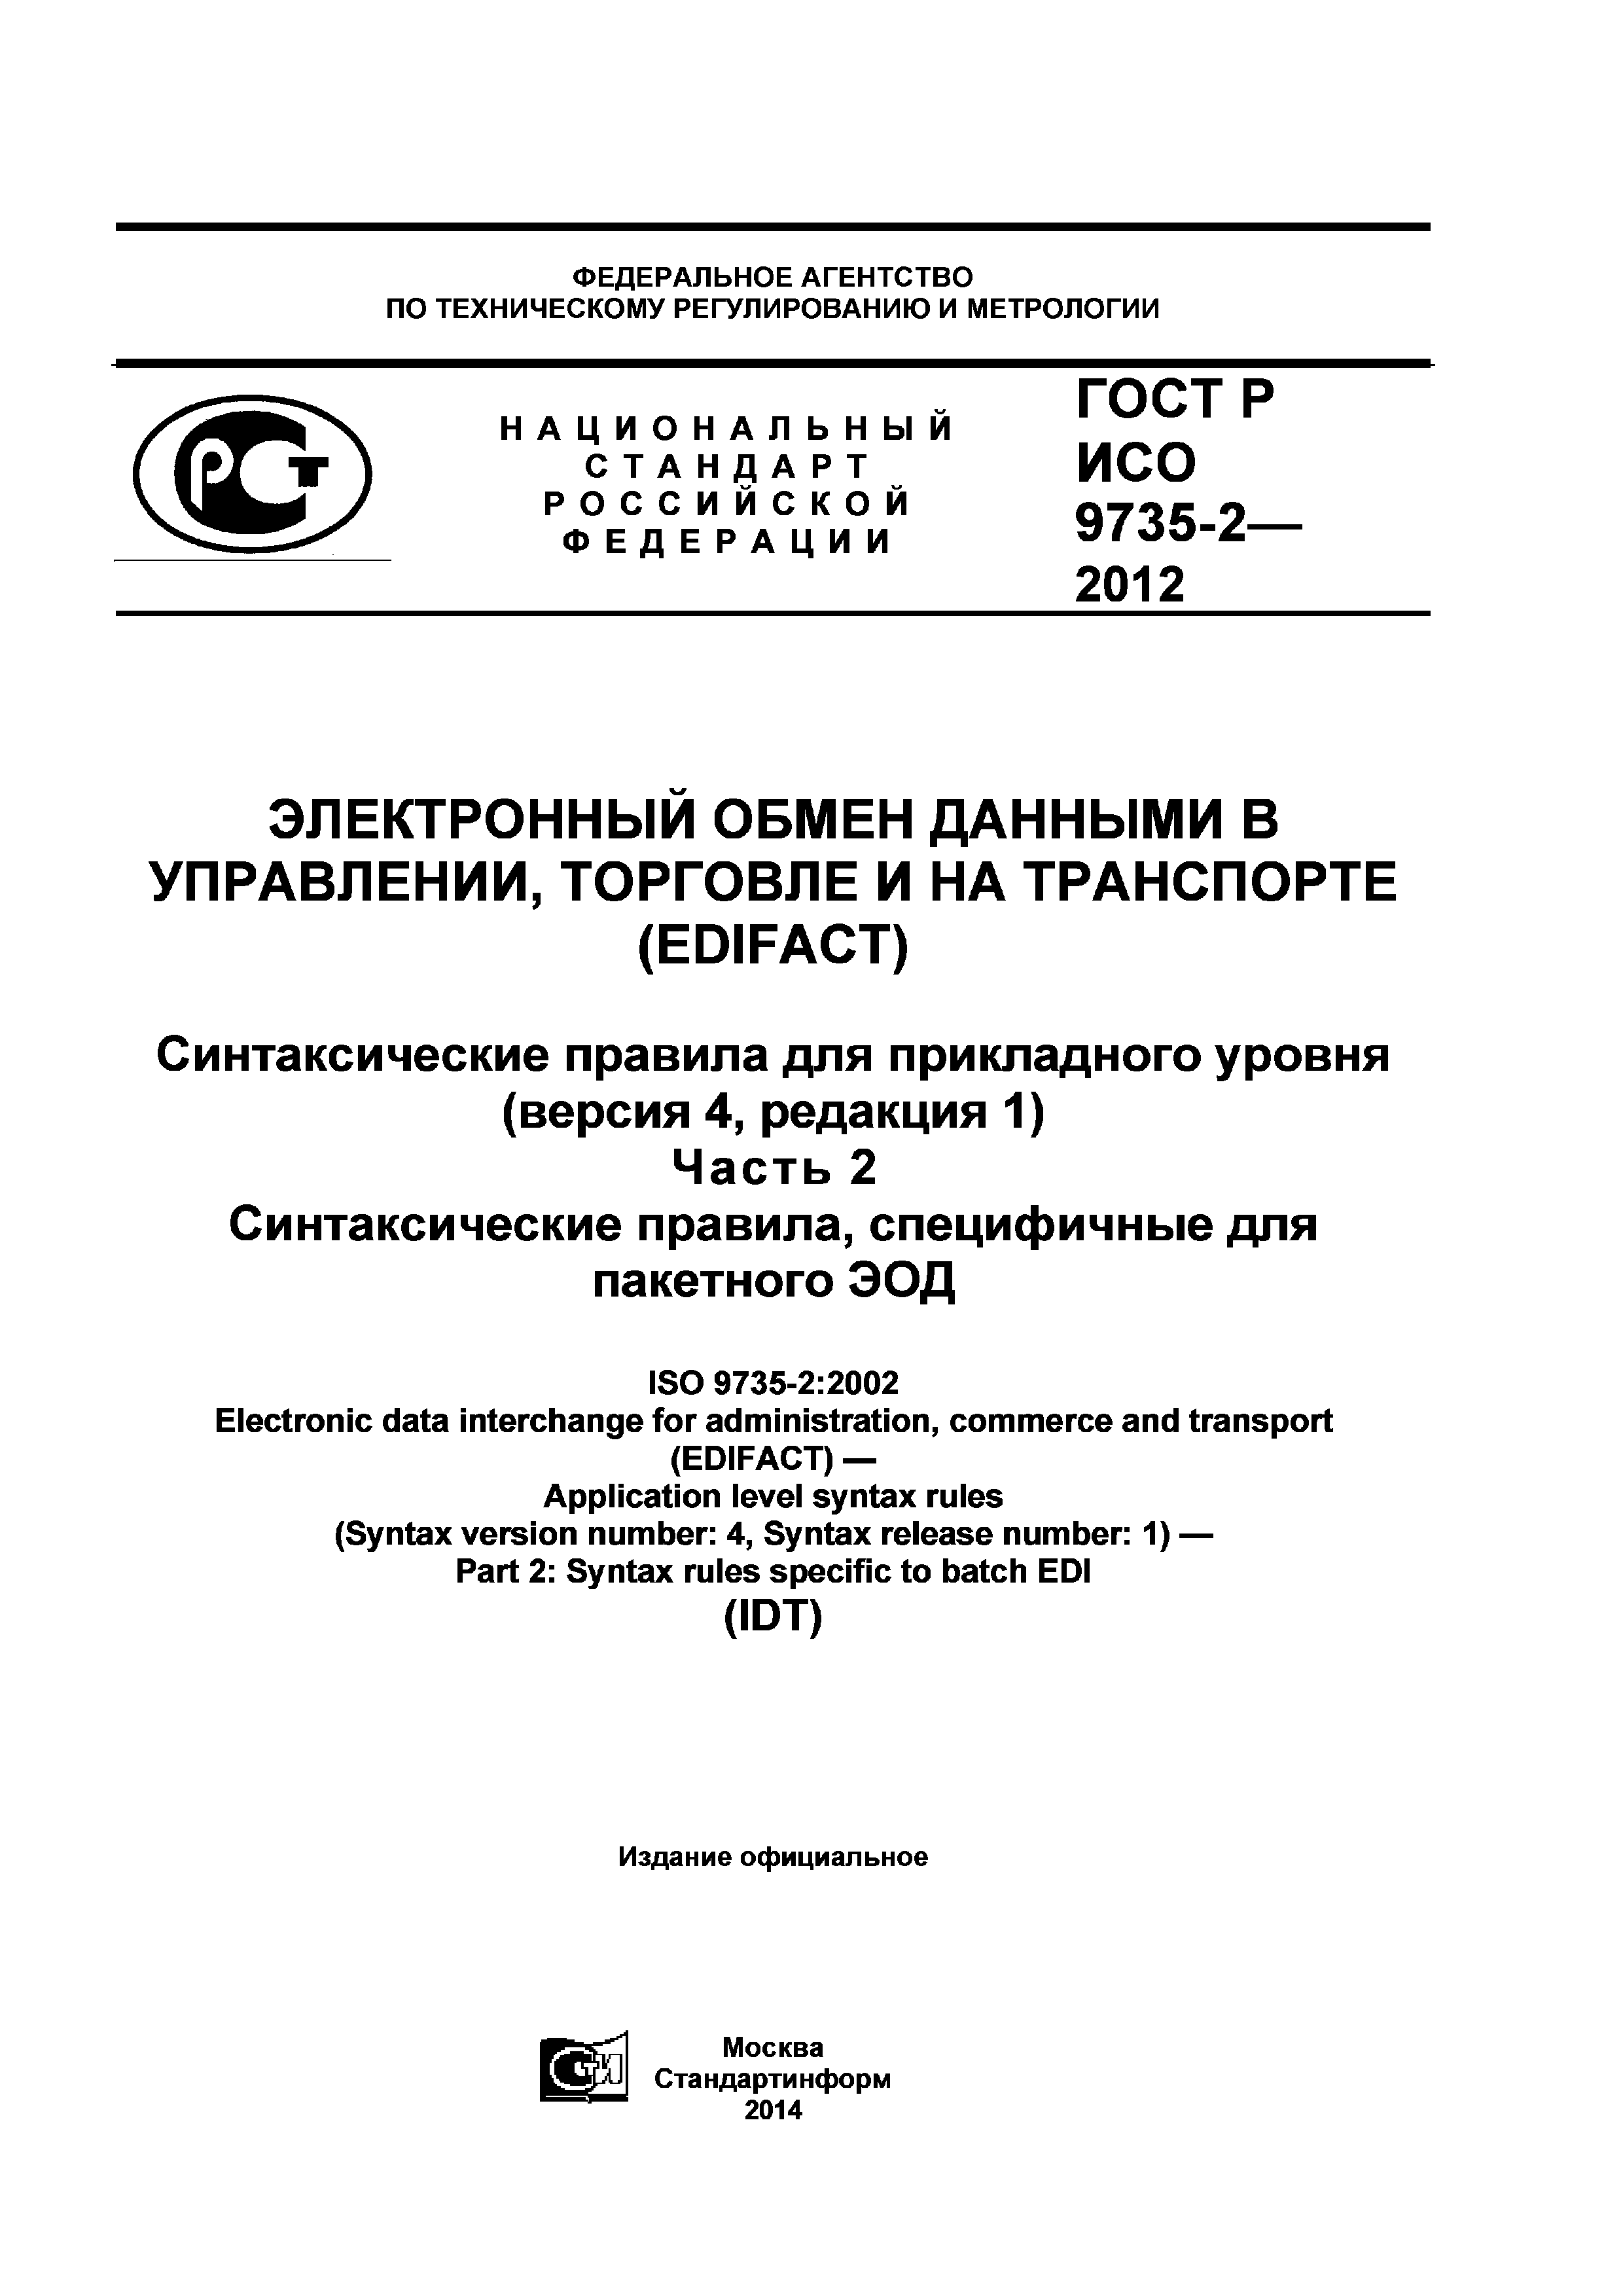 ГОСТ Р ИСО 9735-2-2012